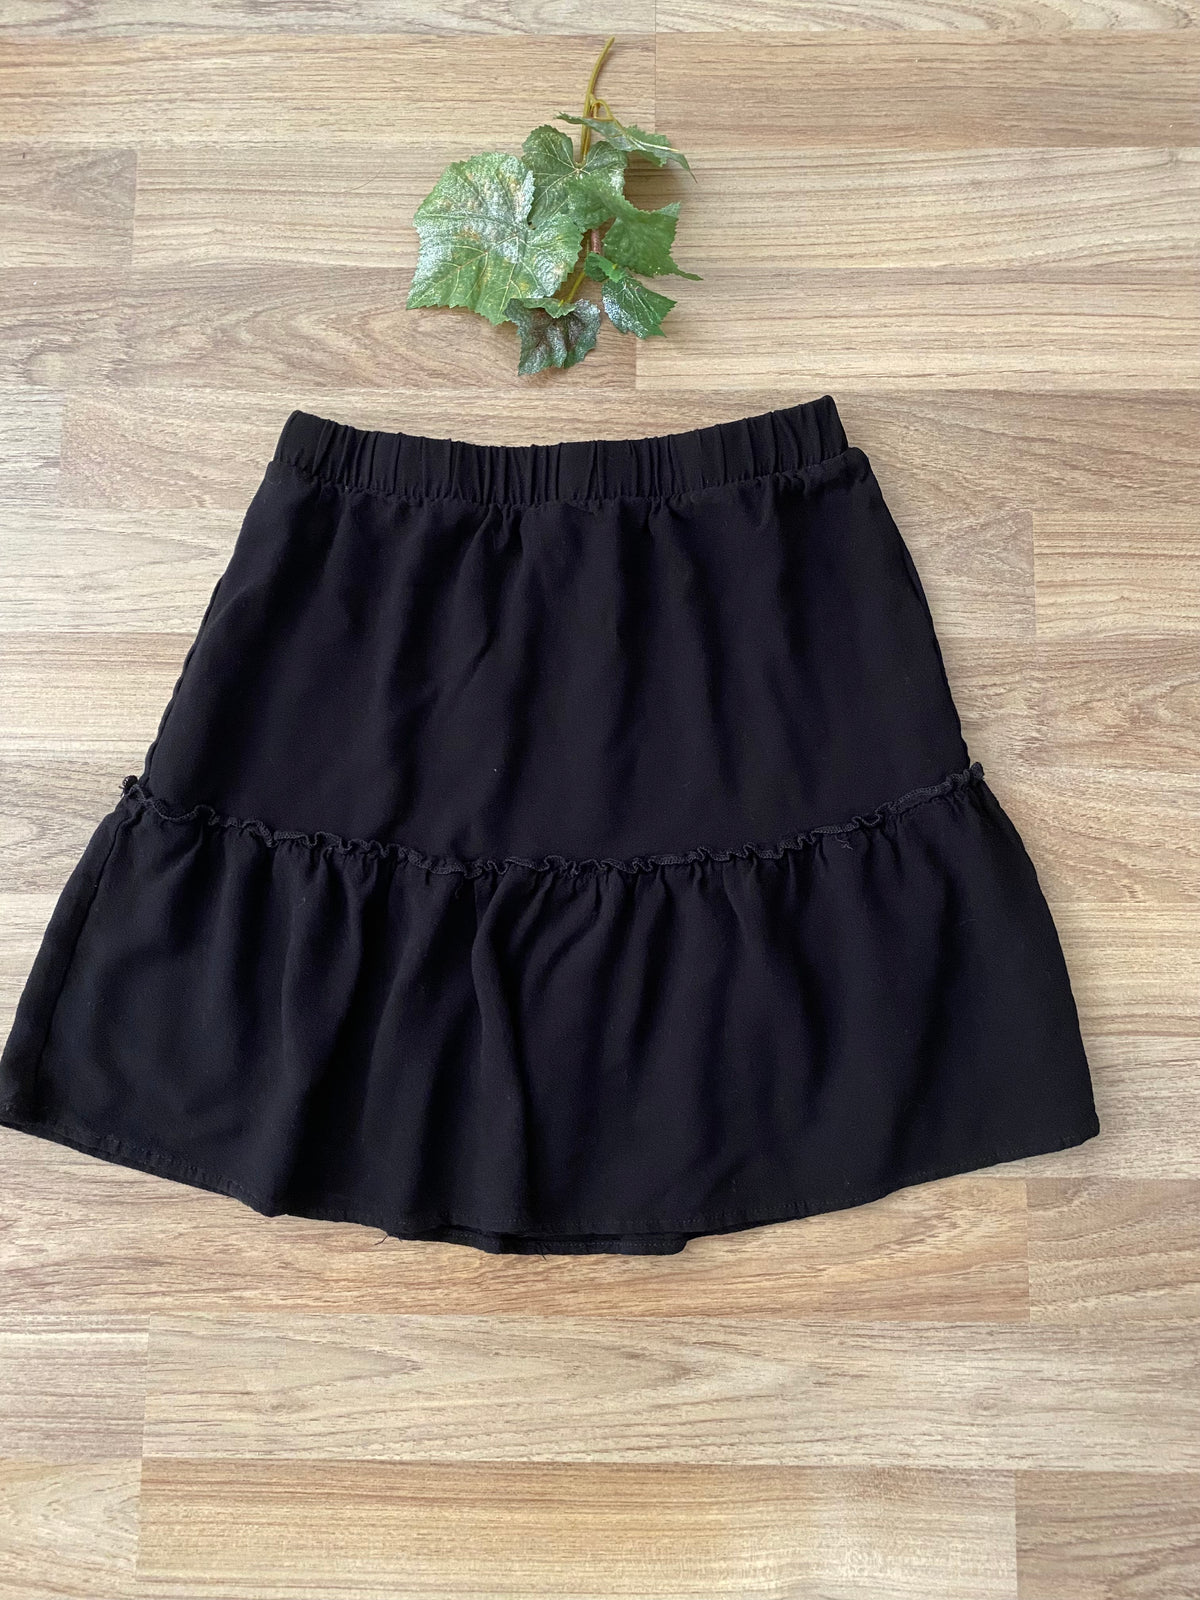 Skirt (Women&#39;s XS)